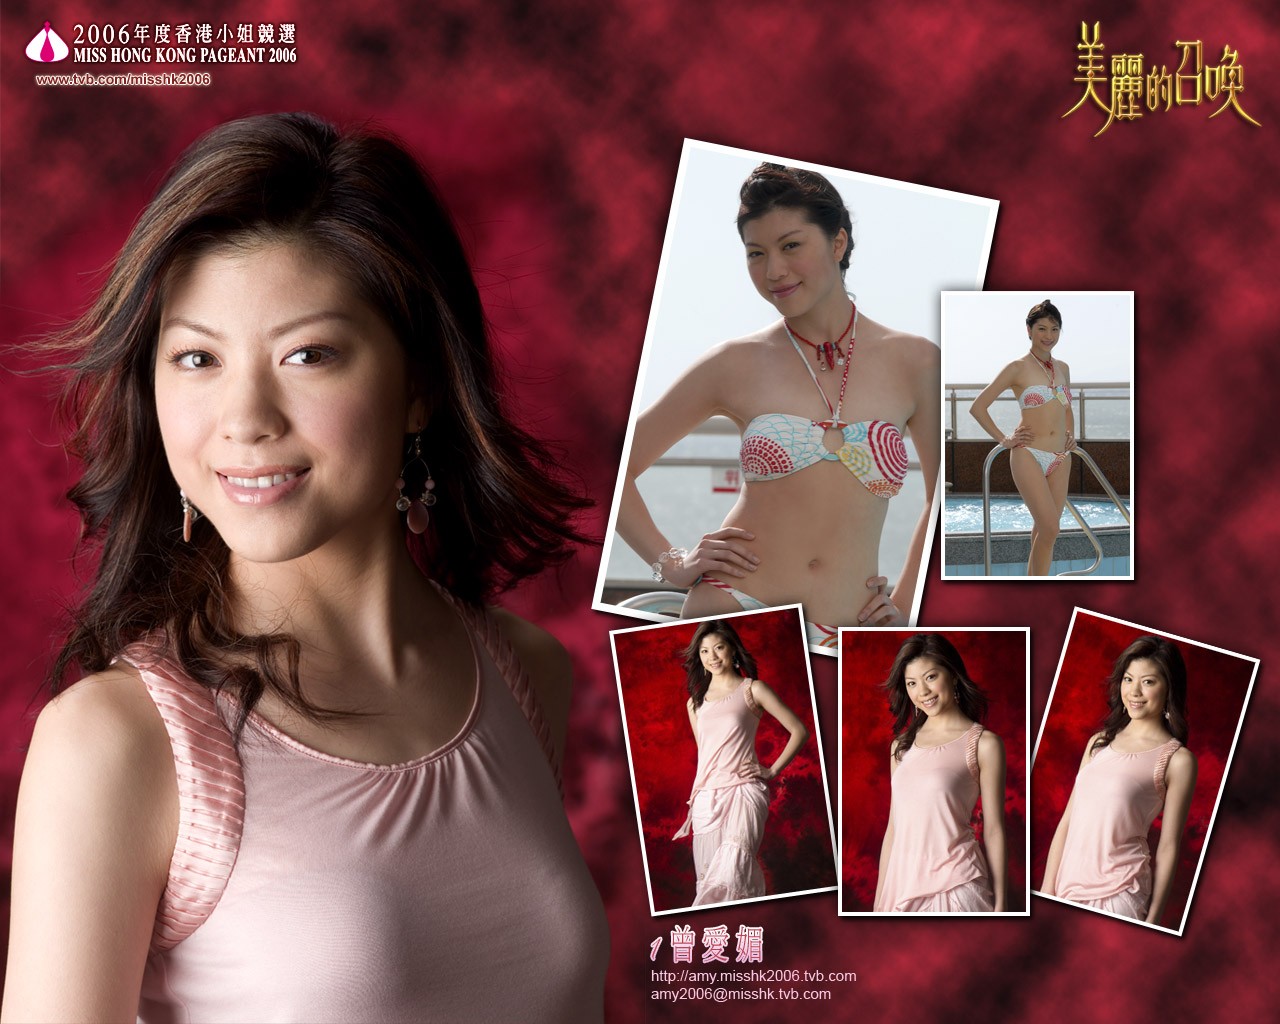 Miss Hong Kong 2006 Album #16 - 1280x1024